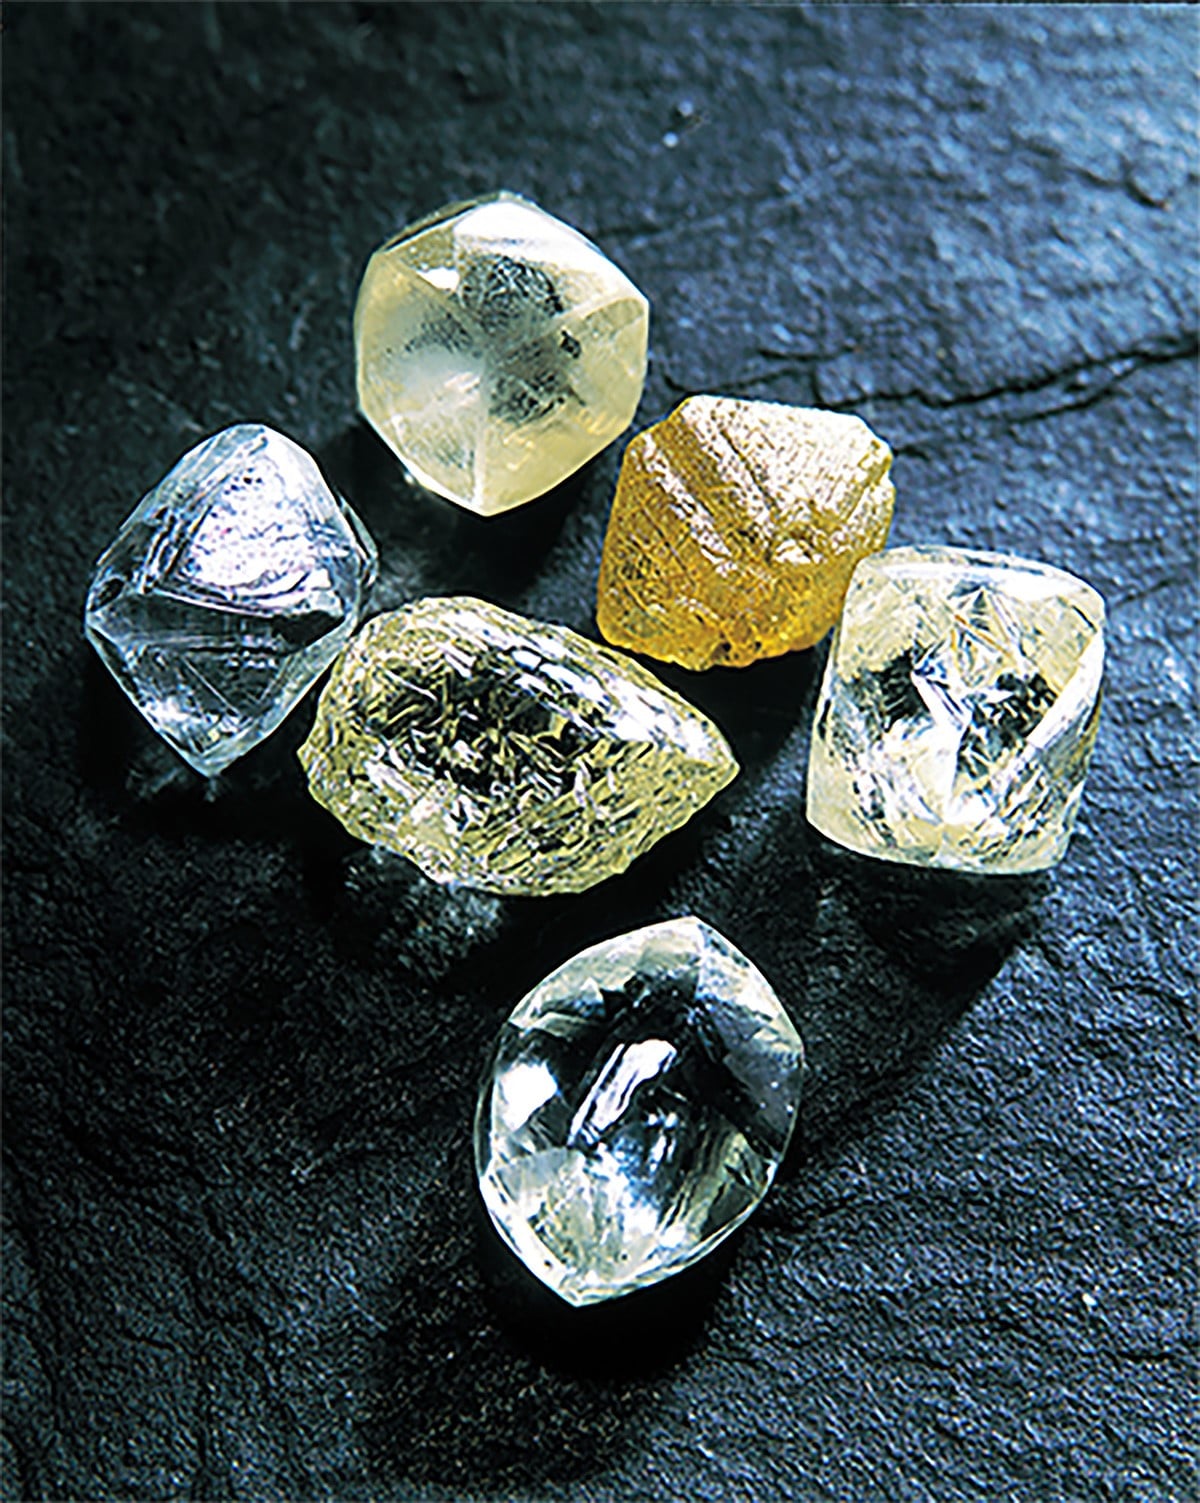 ふだん見ることのないラフダイヤモンドの数々。カットも研磨もせずとも、原石のままのダイヤモンドの輝きも美しい。